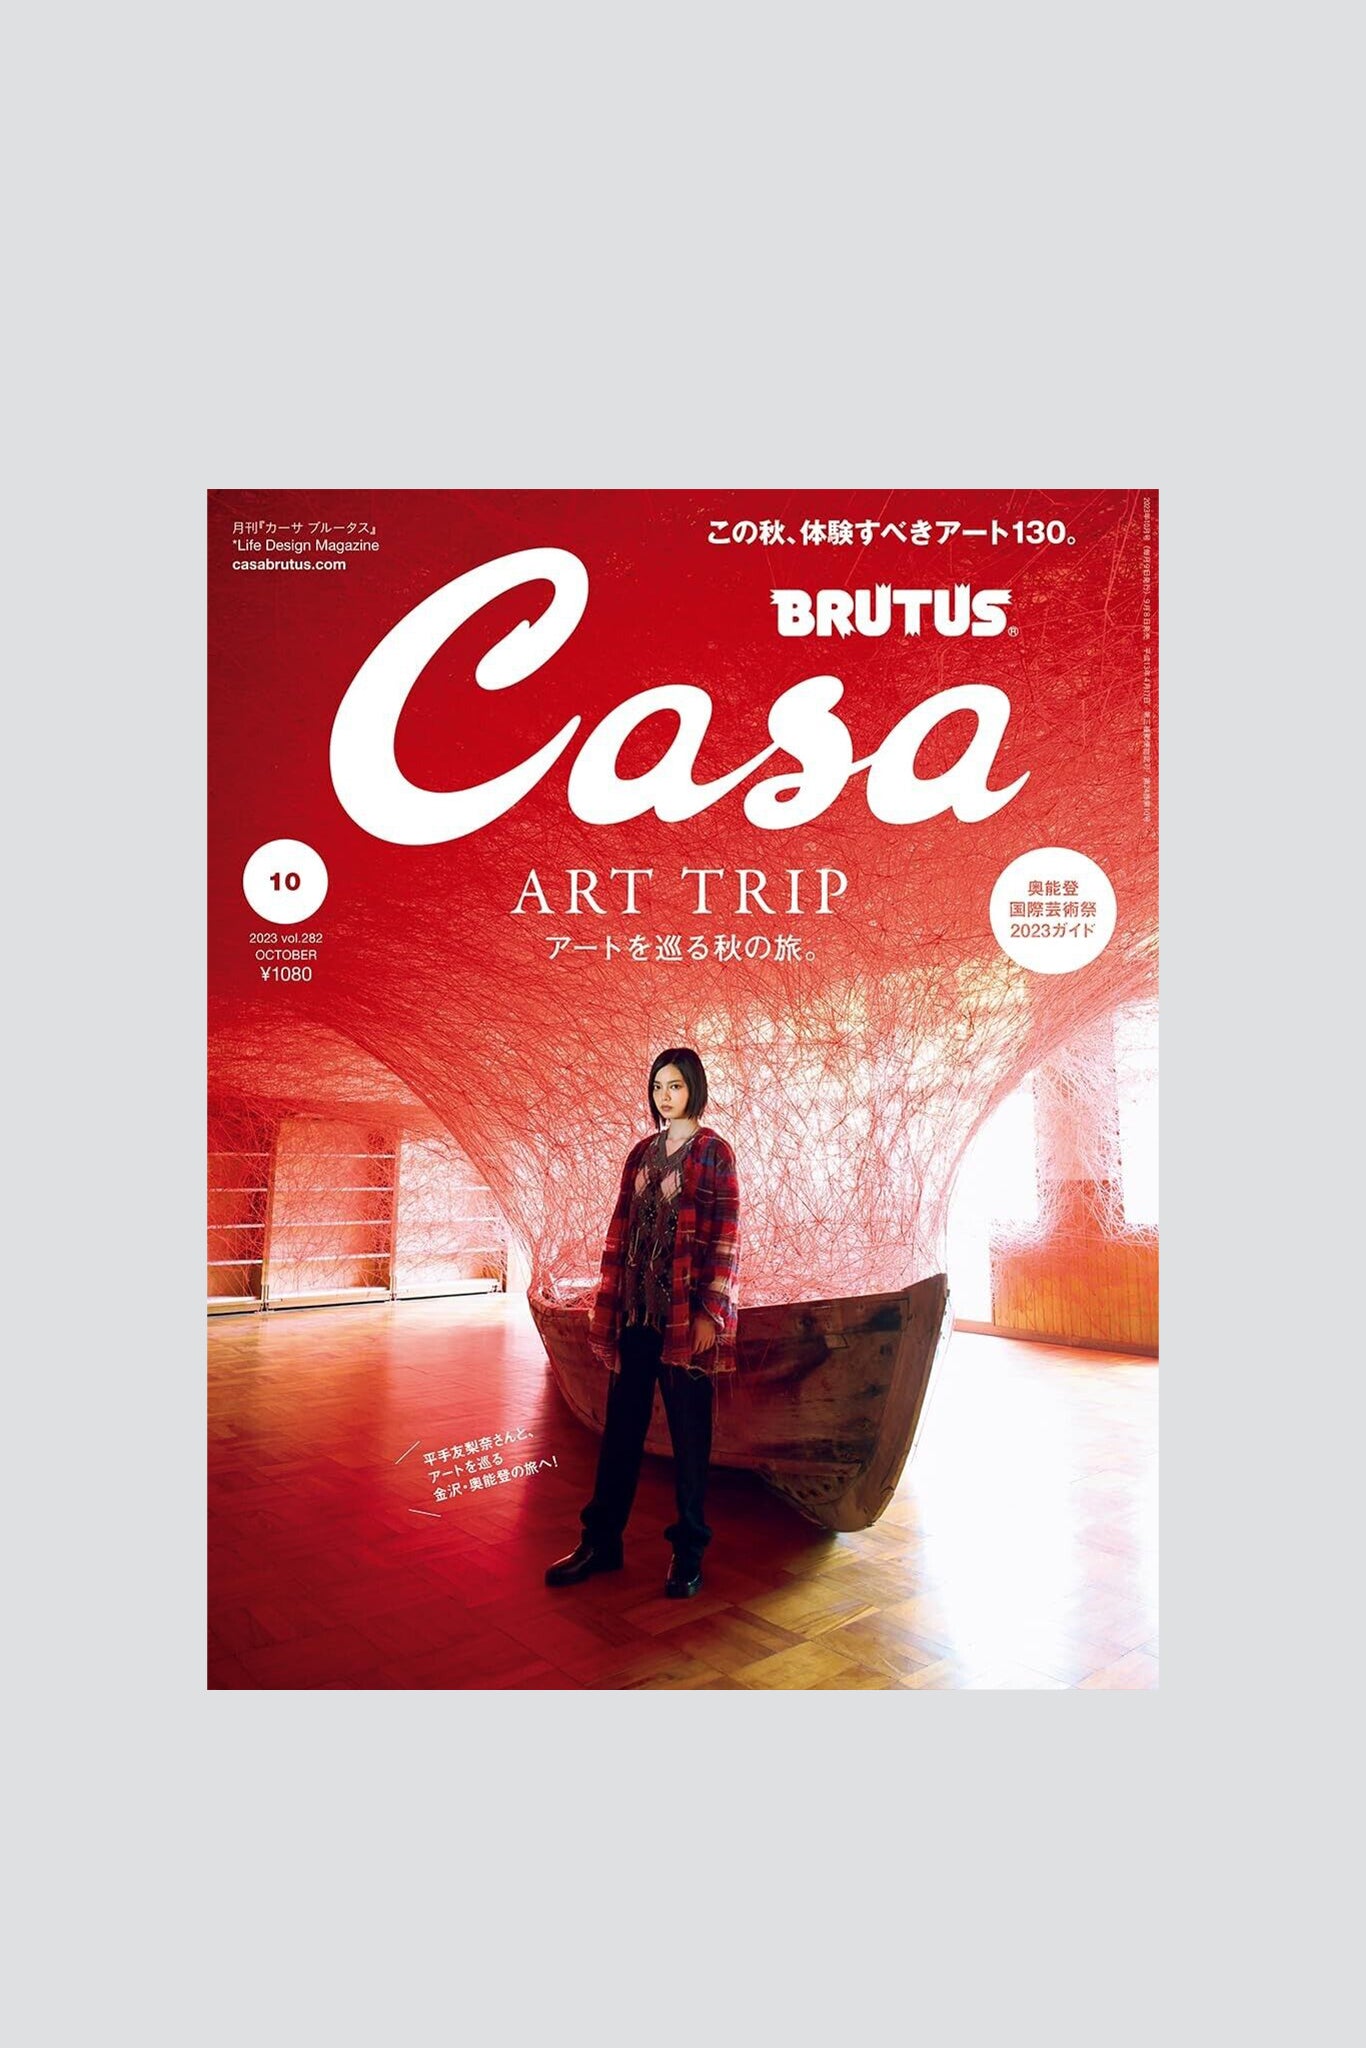 Casa Brutus - Issue 282